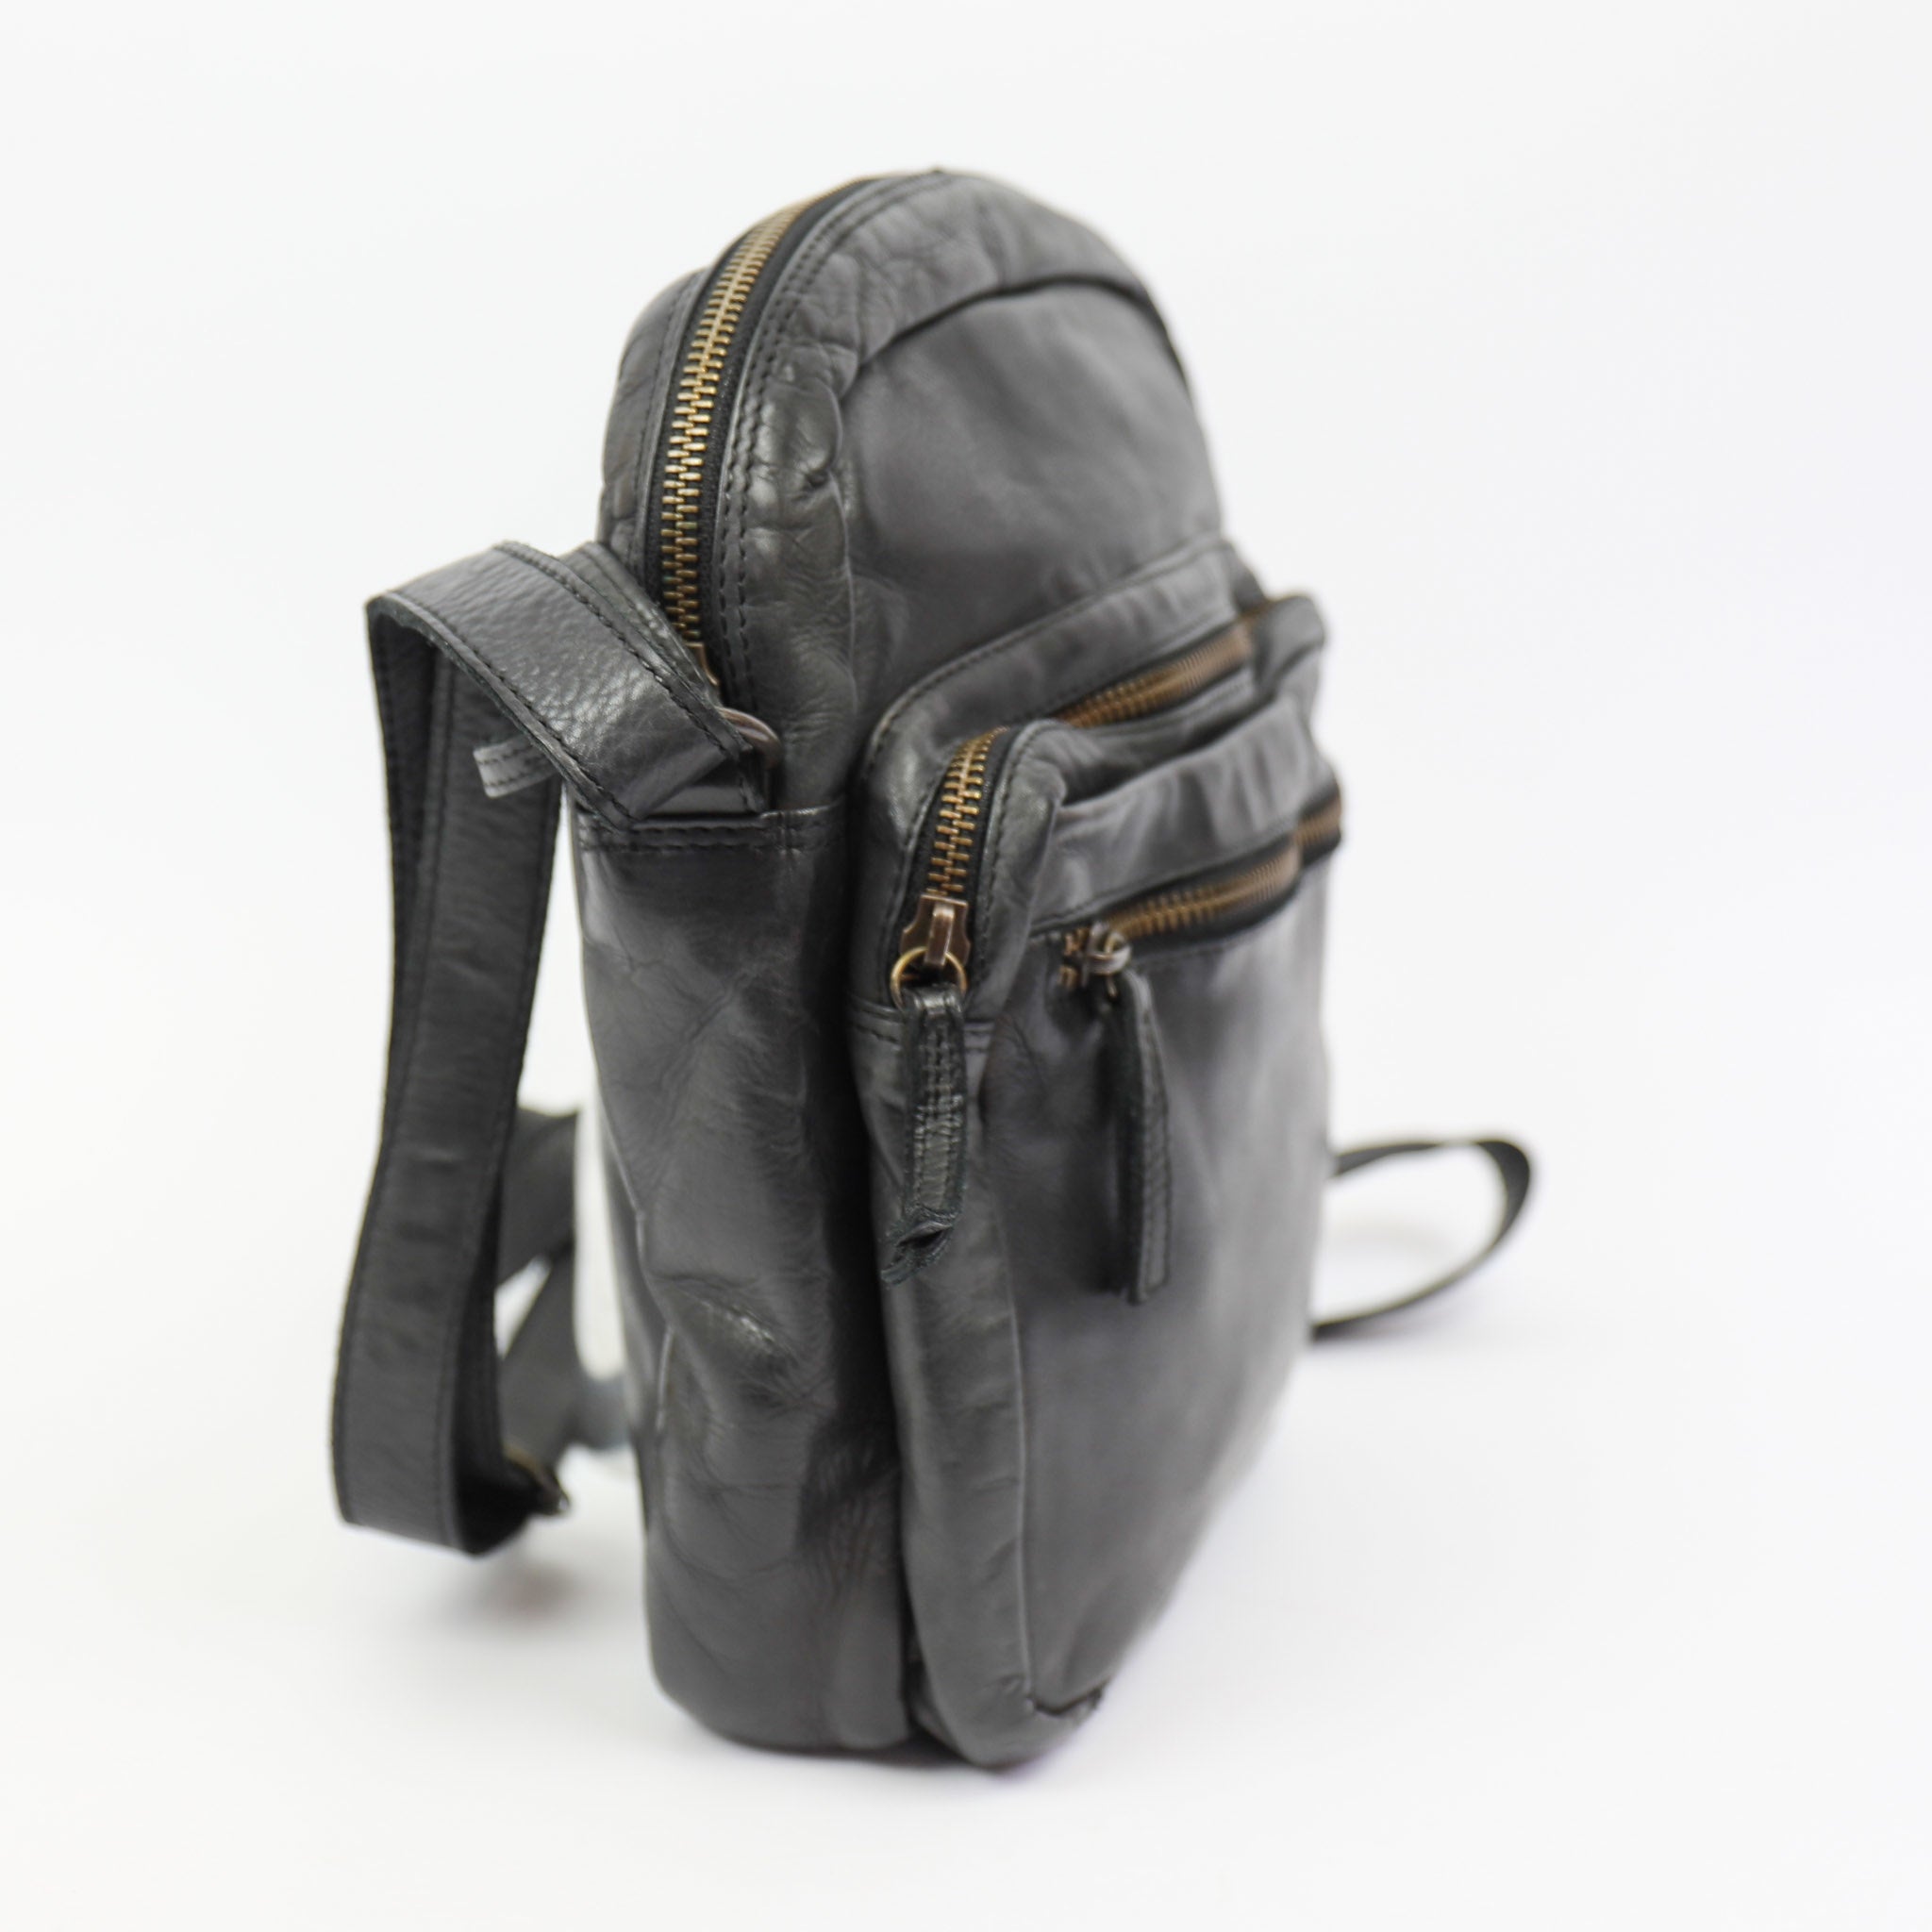 Shoulder bag 'Edwin' - CL 36641 Black